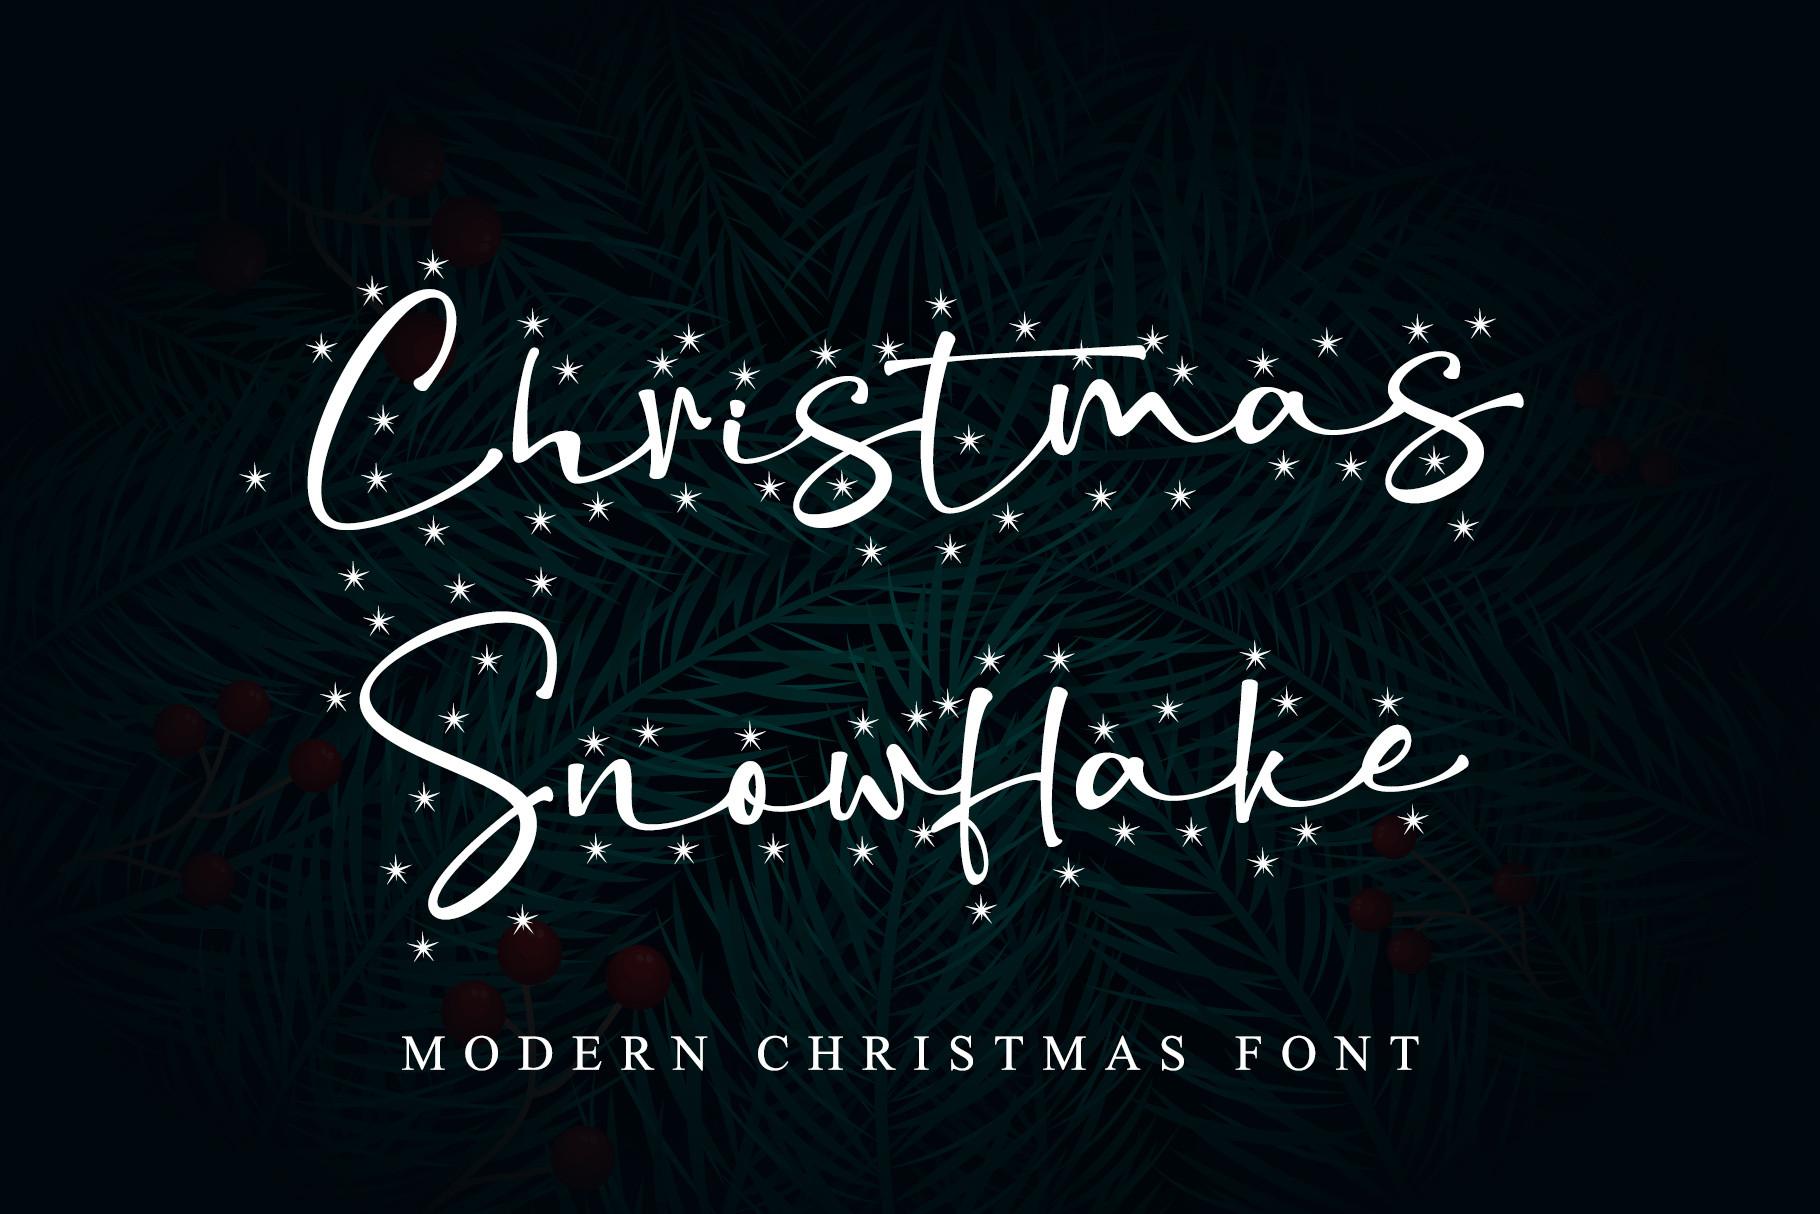 Christmas Snowflake Font